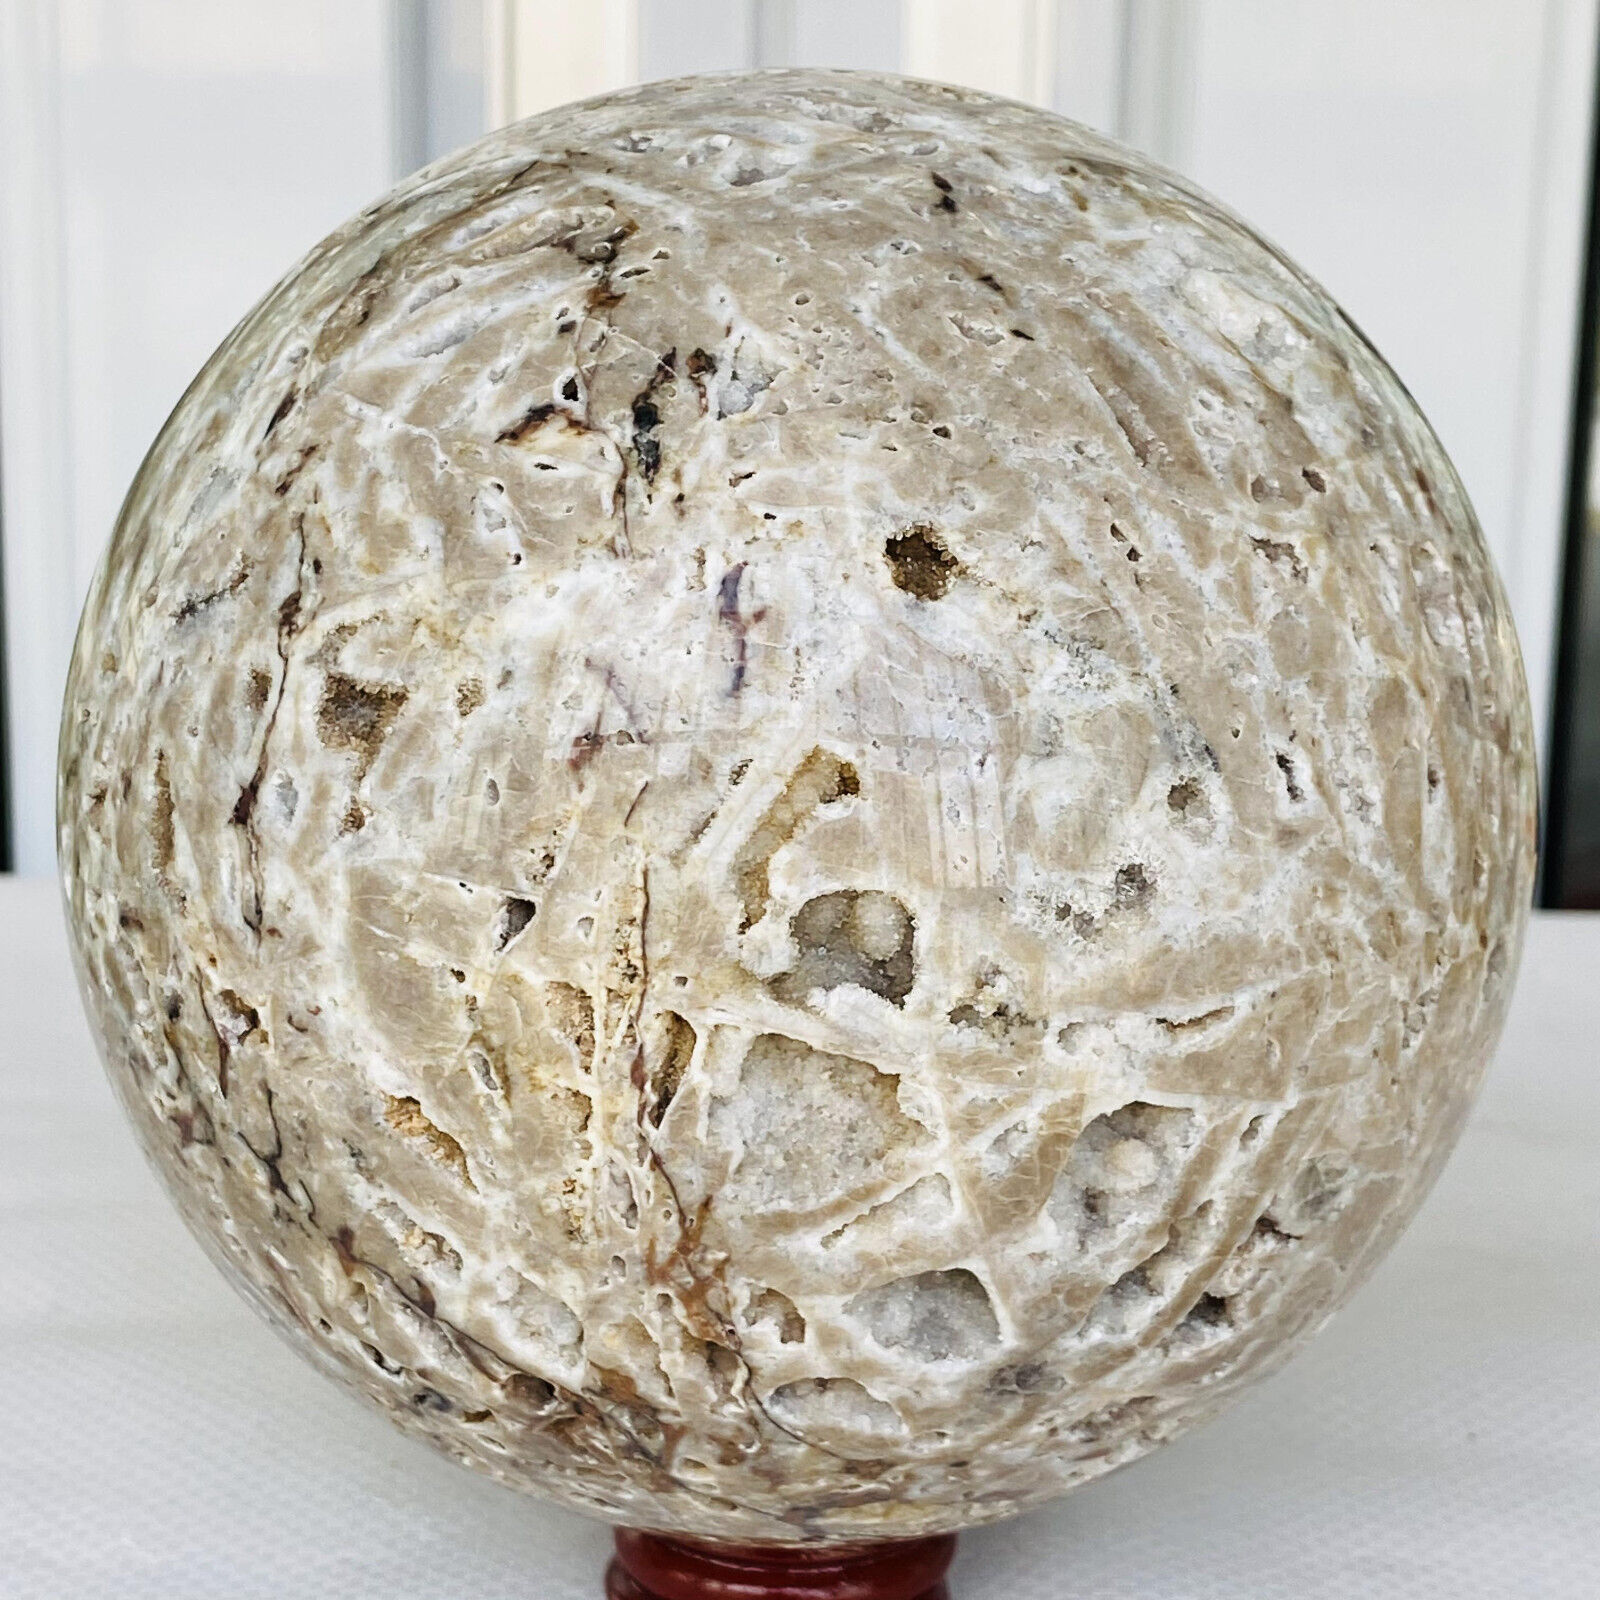 3160g Natural Sphalerite Quartz Crystal Sphere Ball Reiki Healing